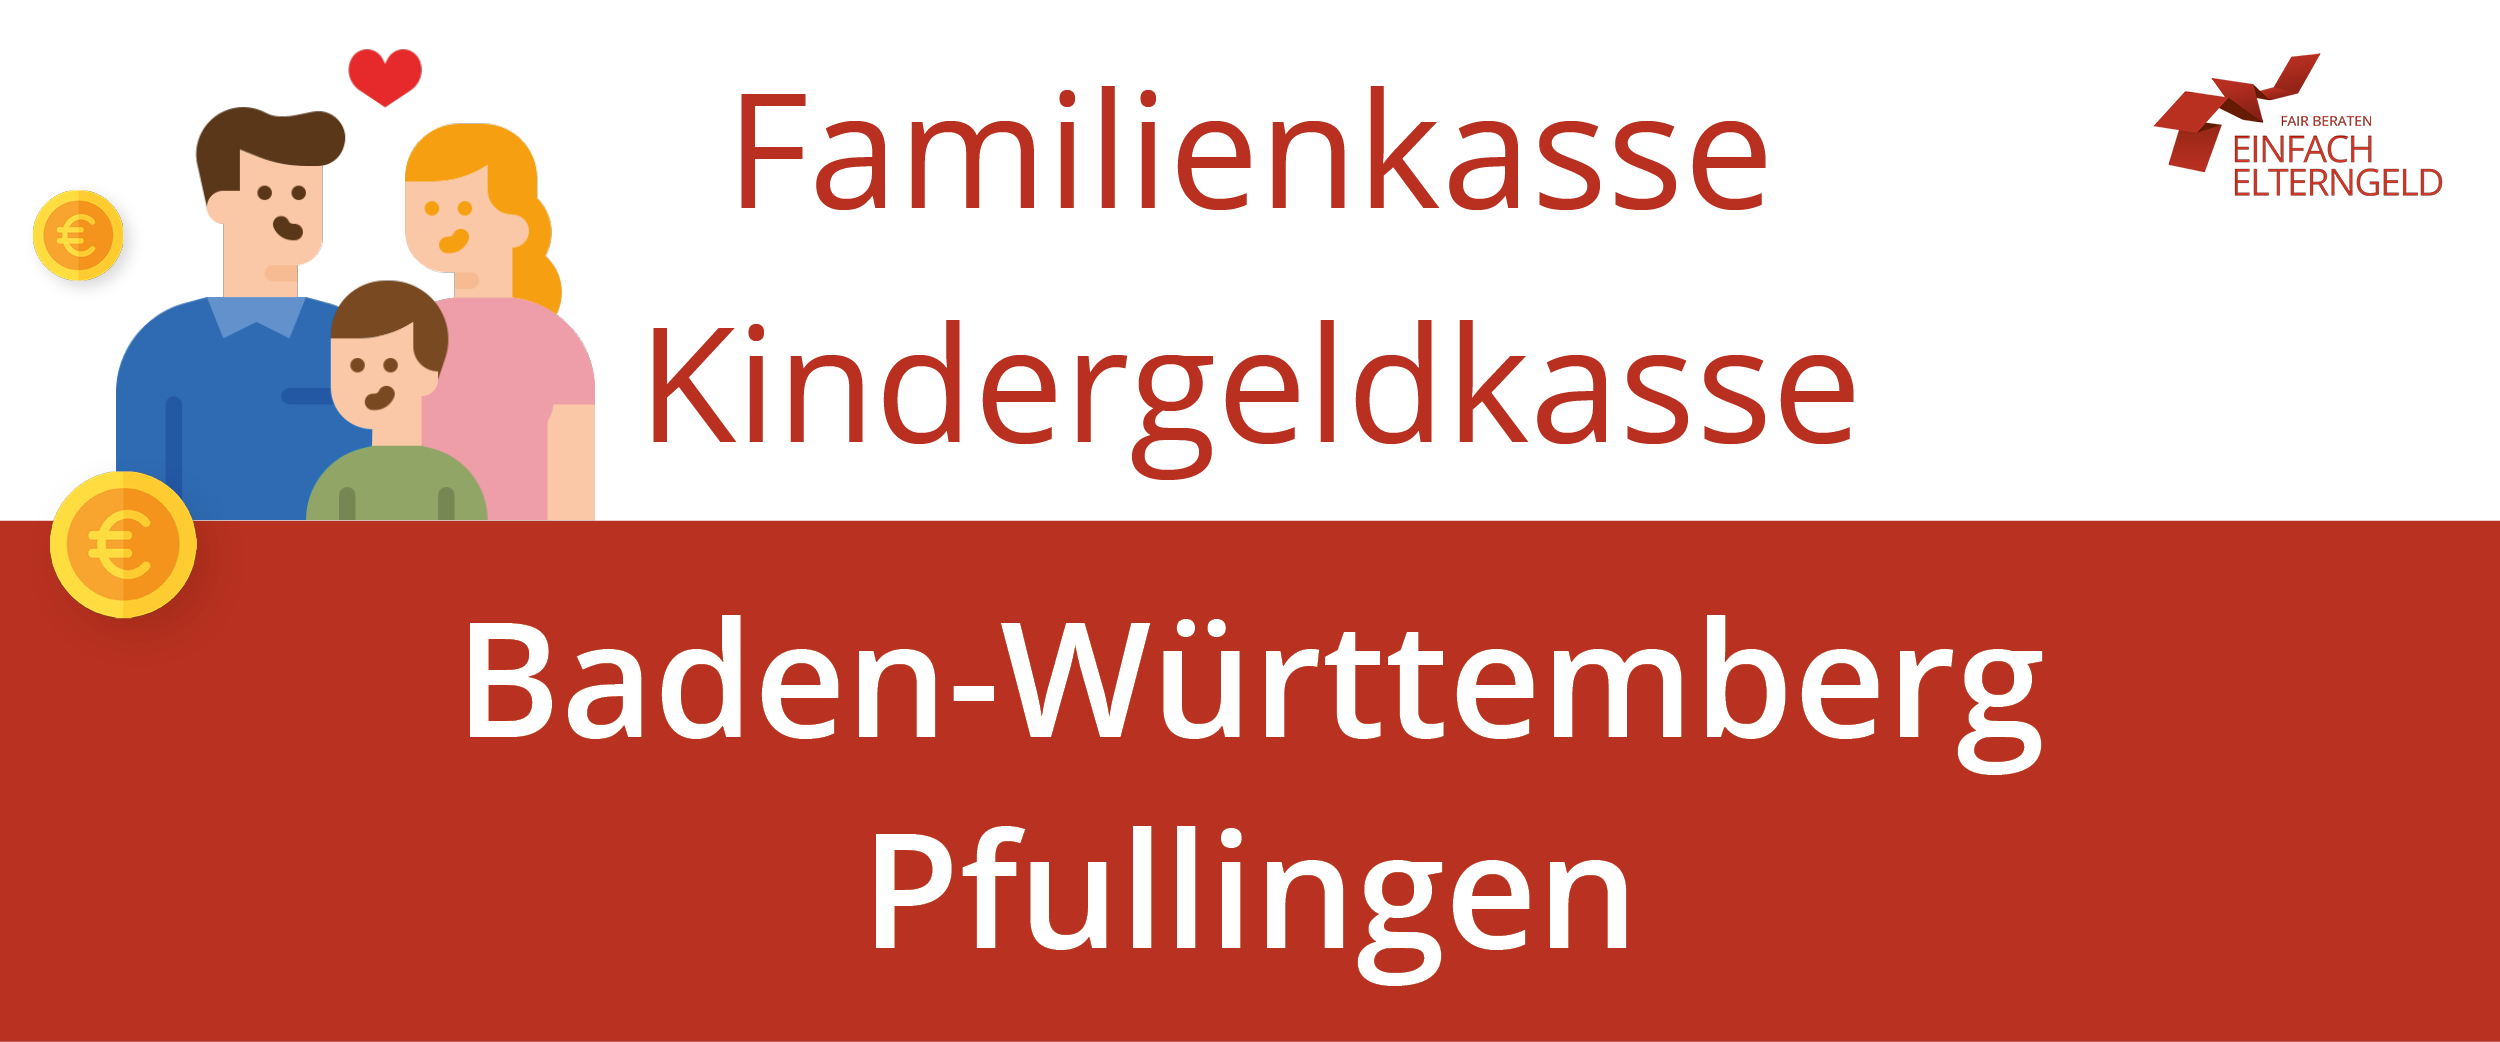 Familienkasse Kindergeldkasse Baden-Württemberg Pfullingen - So erreichen Sie Ihre Familienkasse.